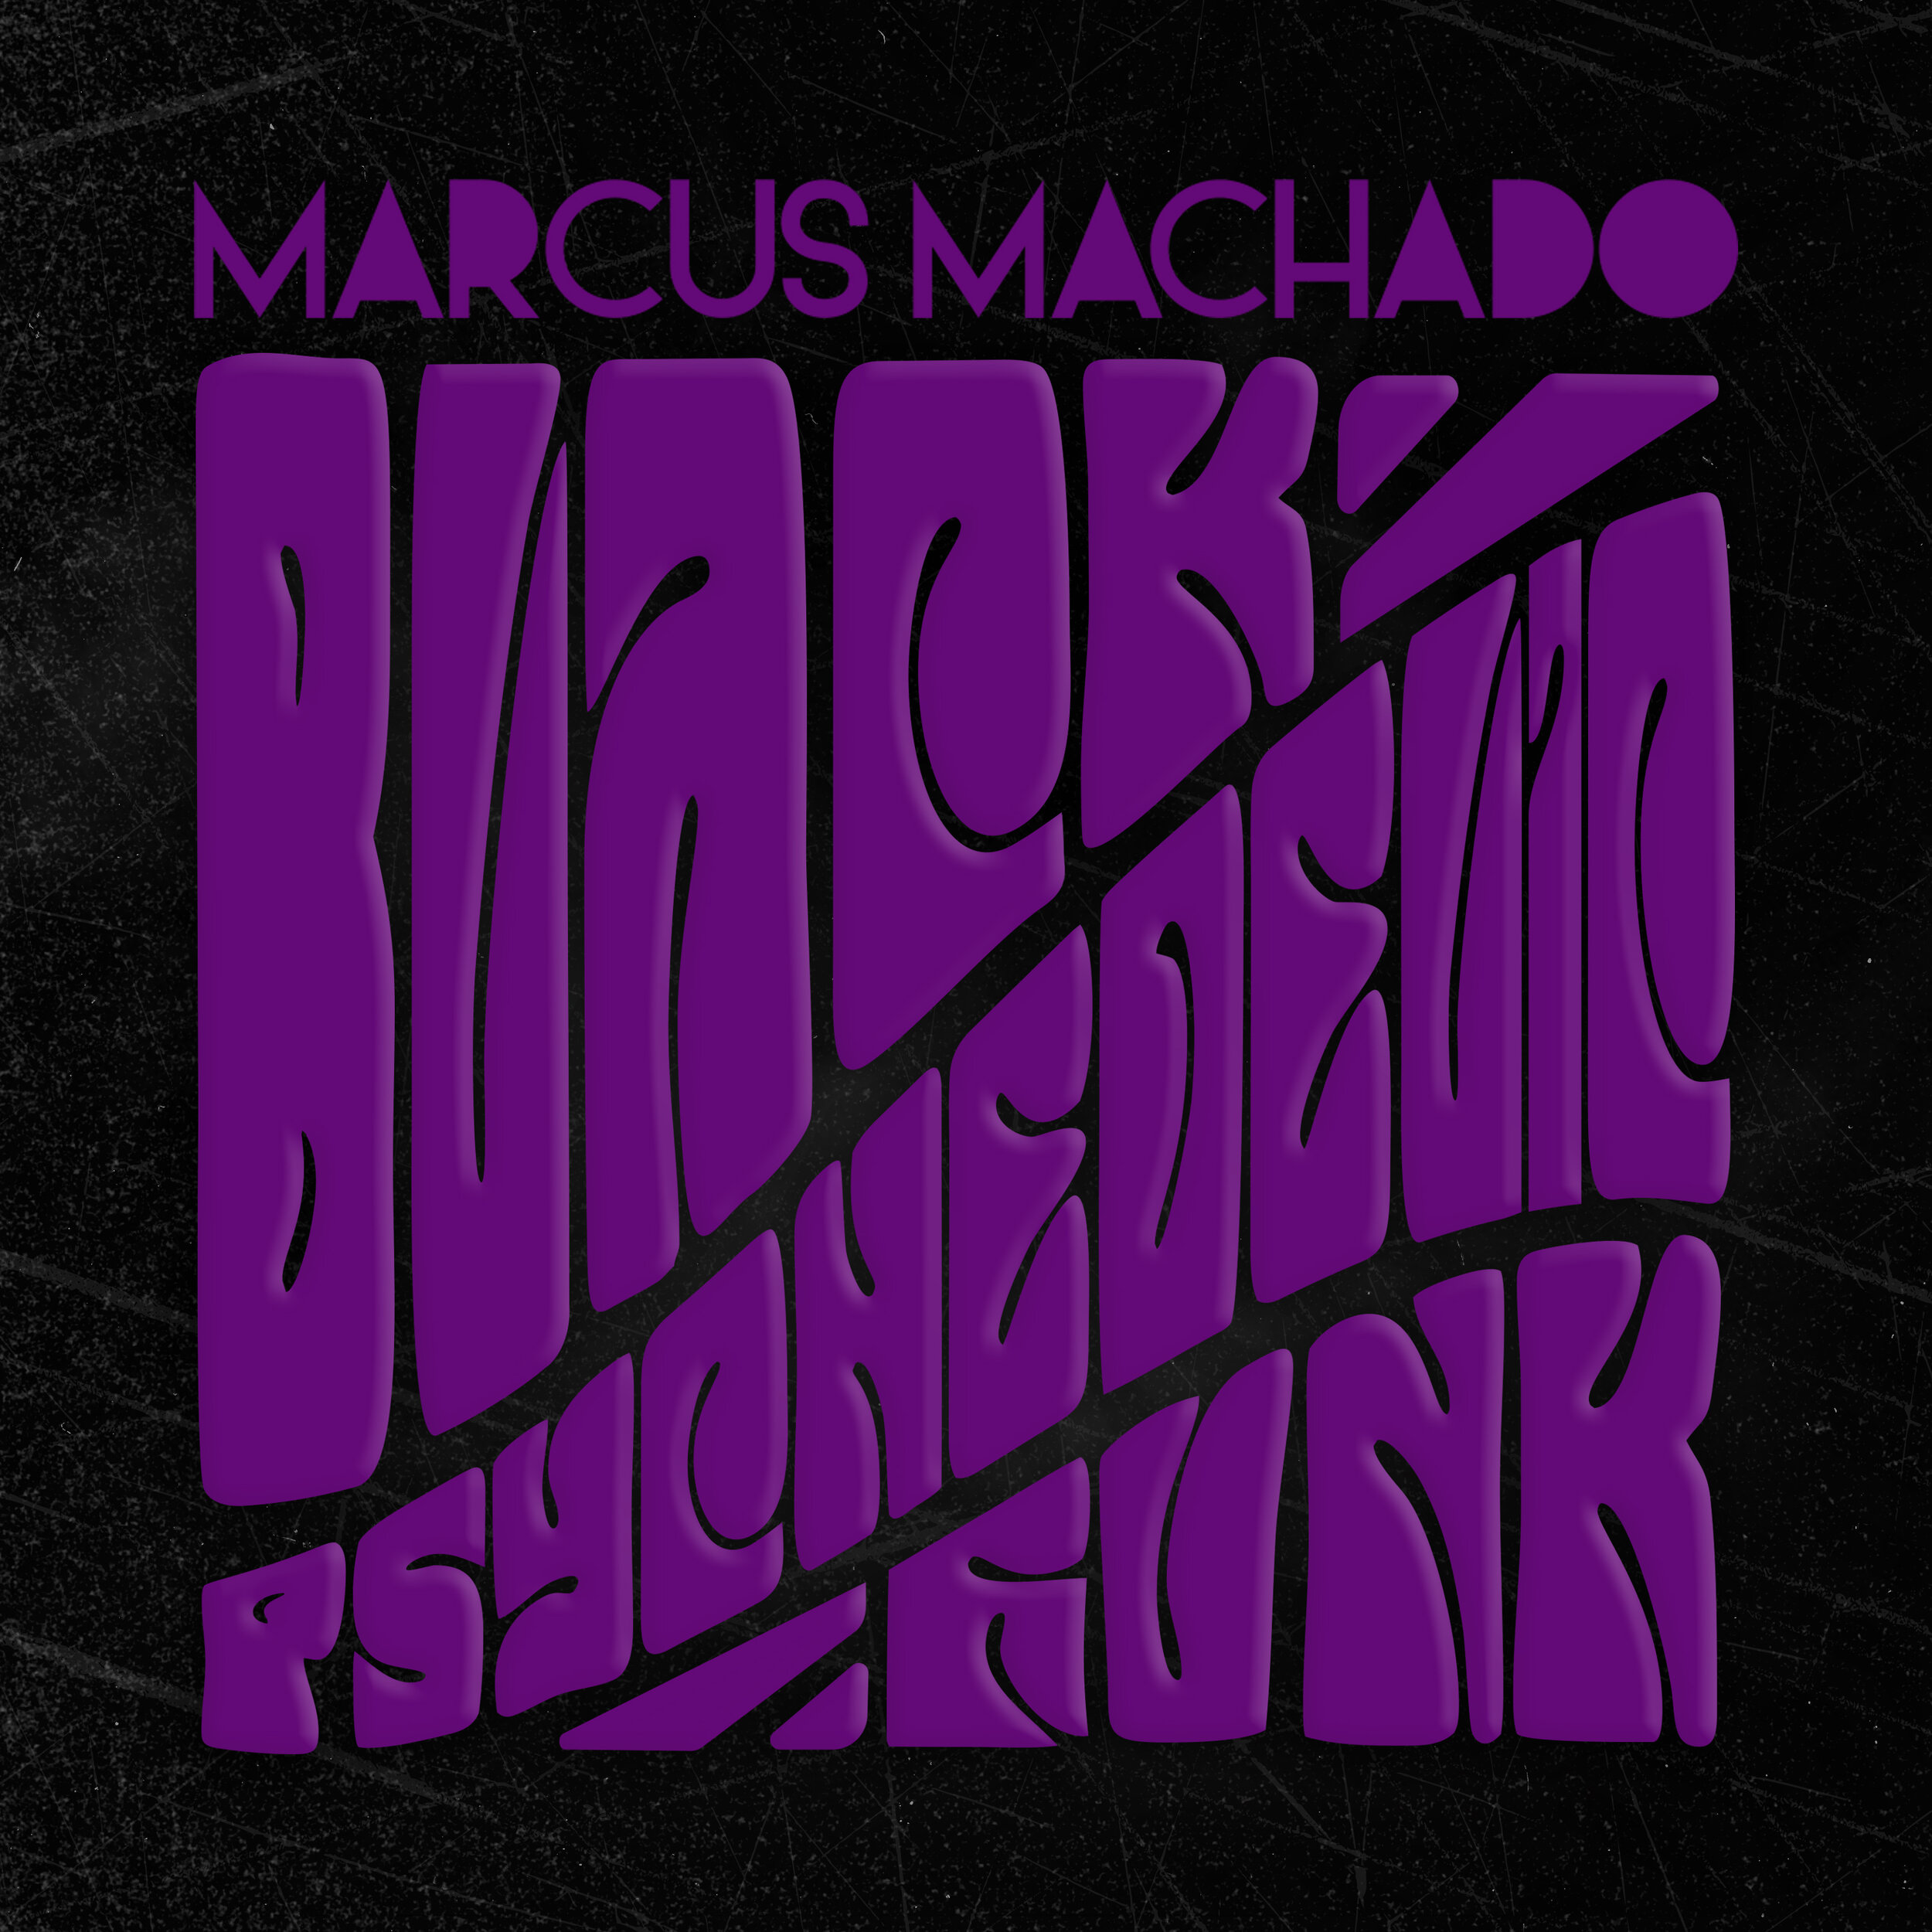 Marcus Machado